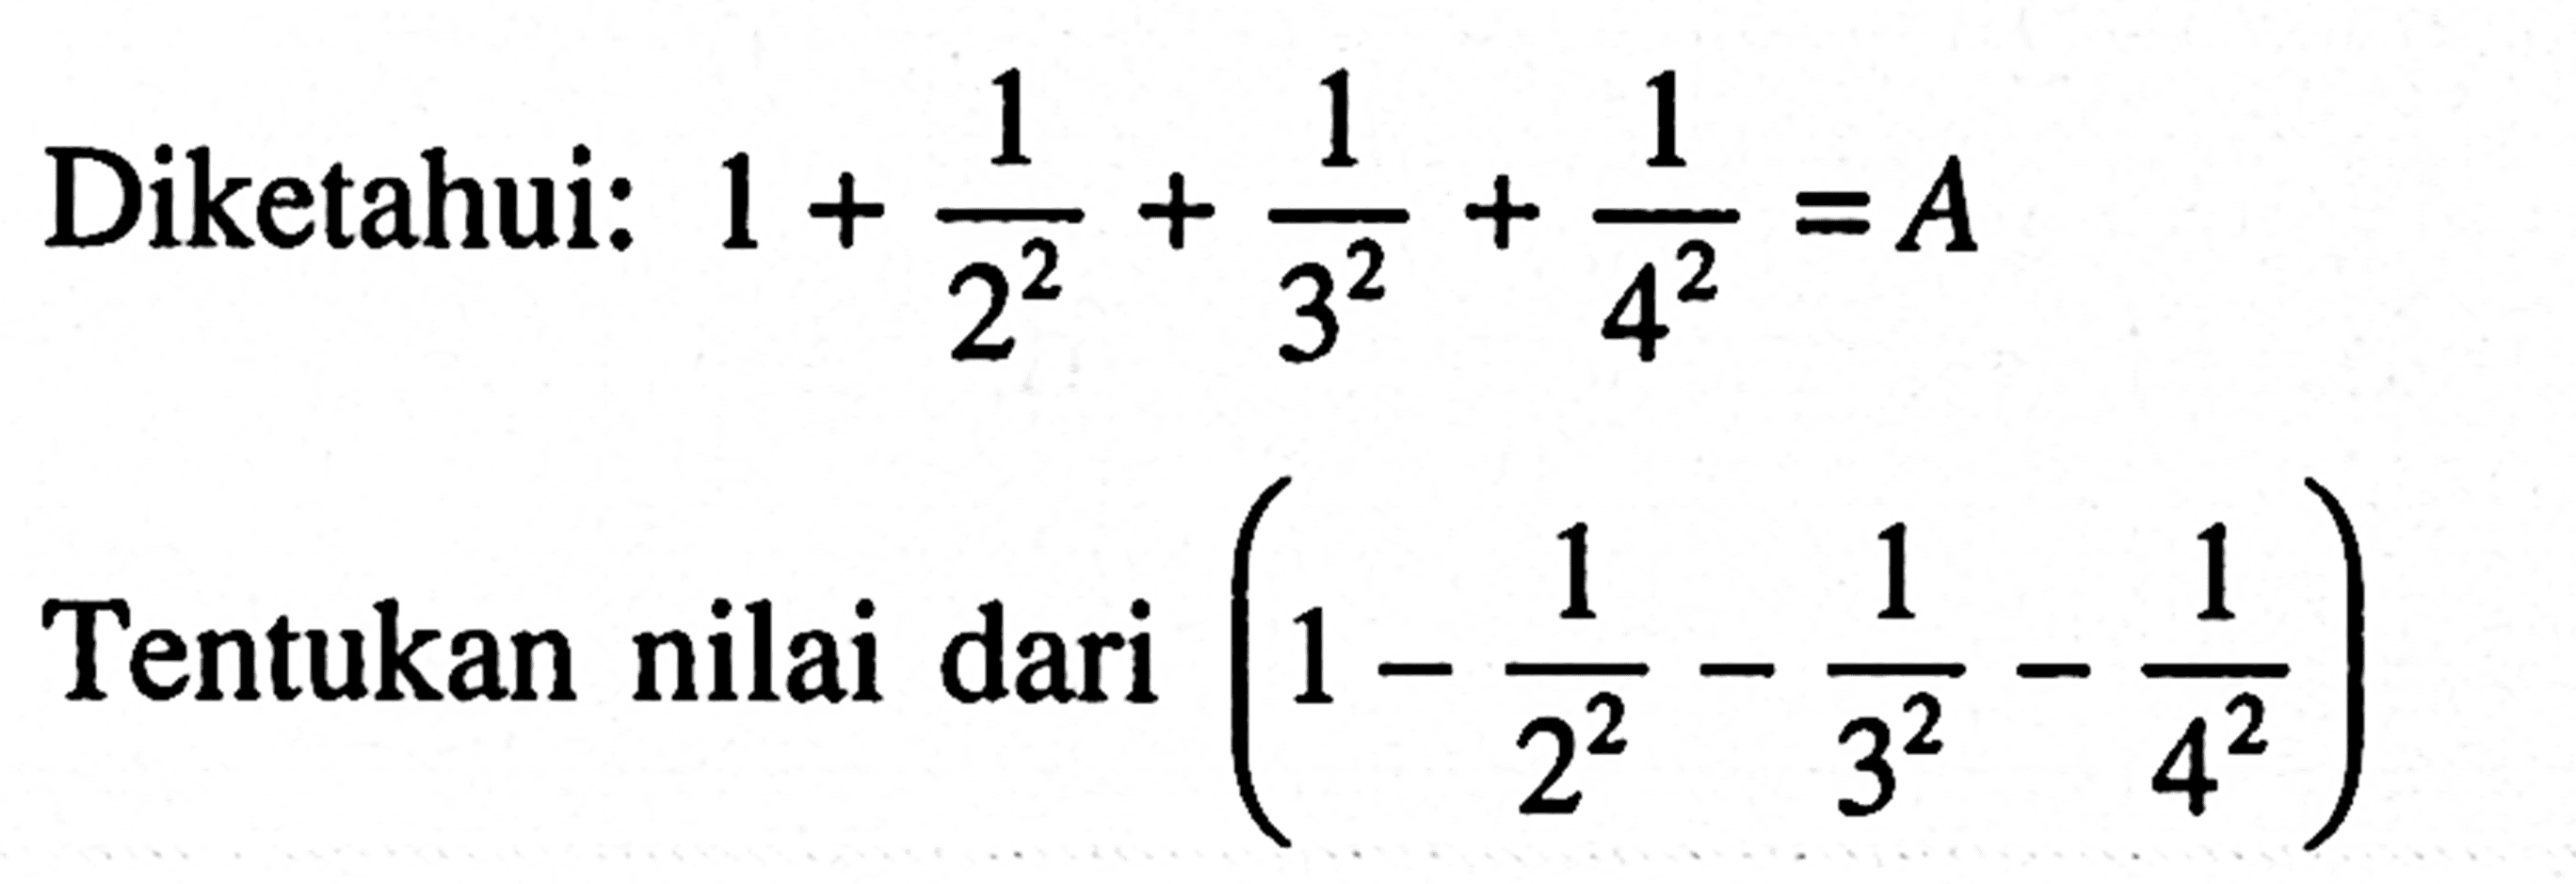 Diketahui: 1 + 1/2^2 + 1/3^3 + 1/4^2 = A Tentukan nilai dari (1 - 1/2^2 - 1/3^2 - 1/4^2)